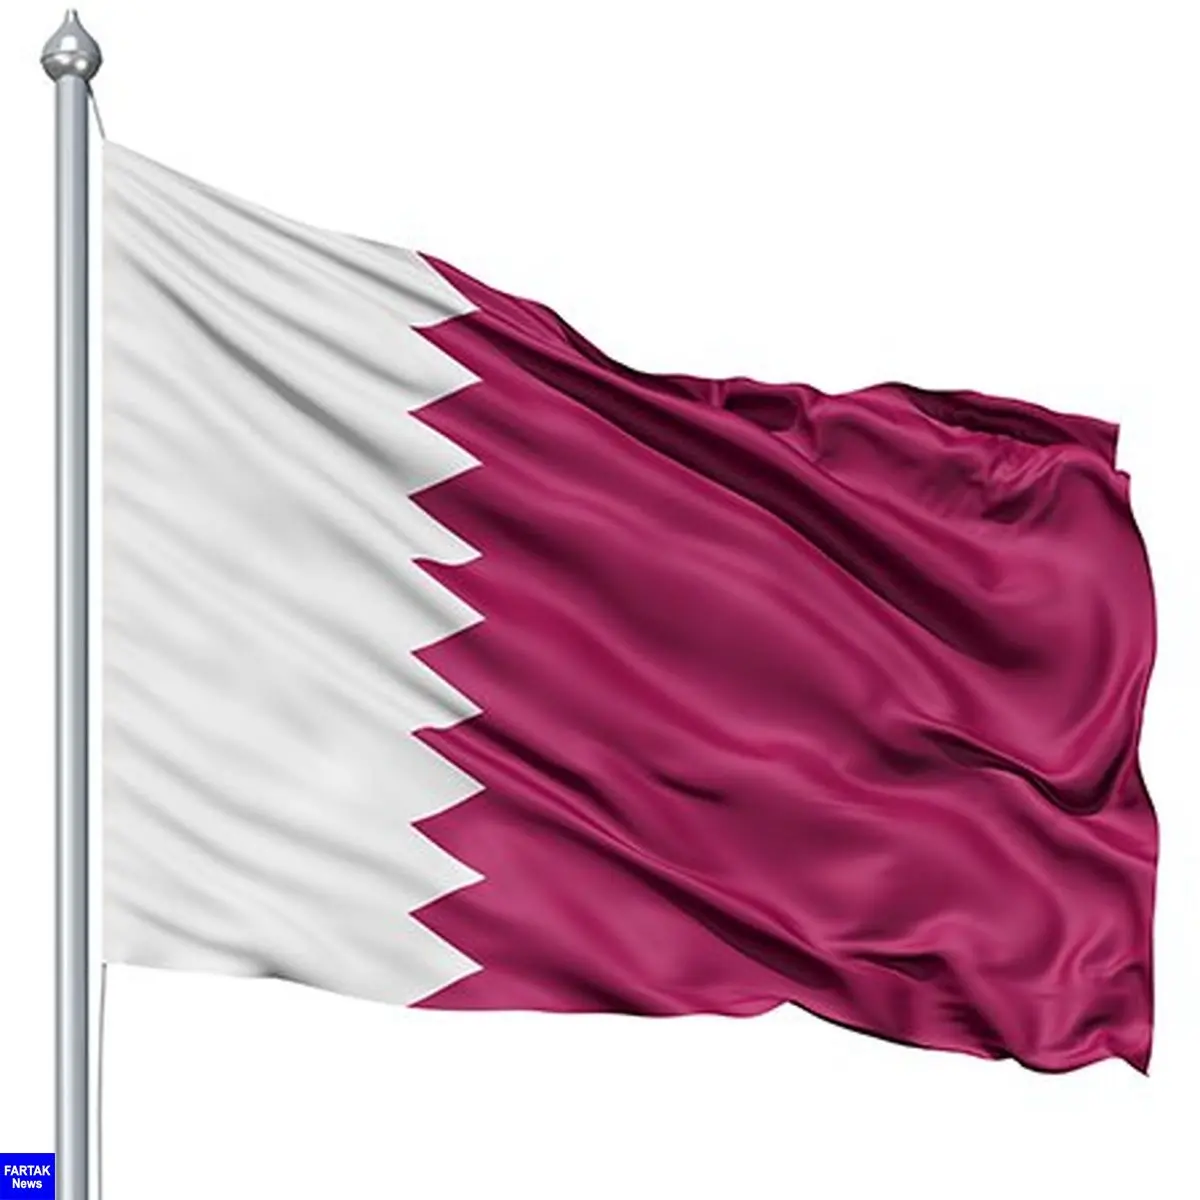 قطر پاسخ بیانیه کشورهای تحریم کننده را داد